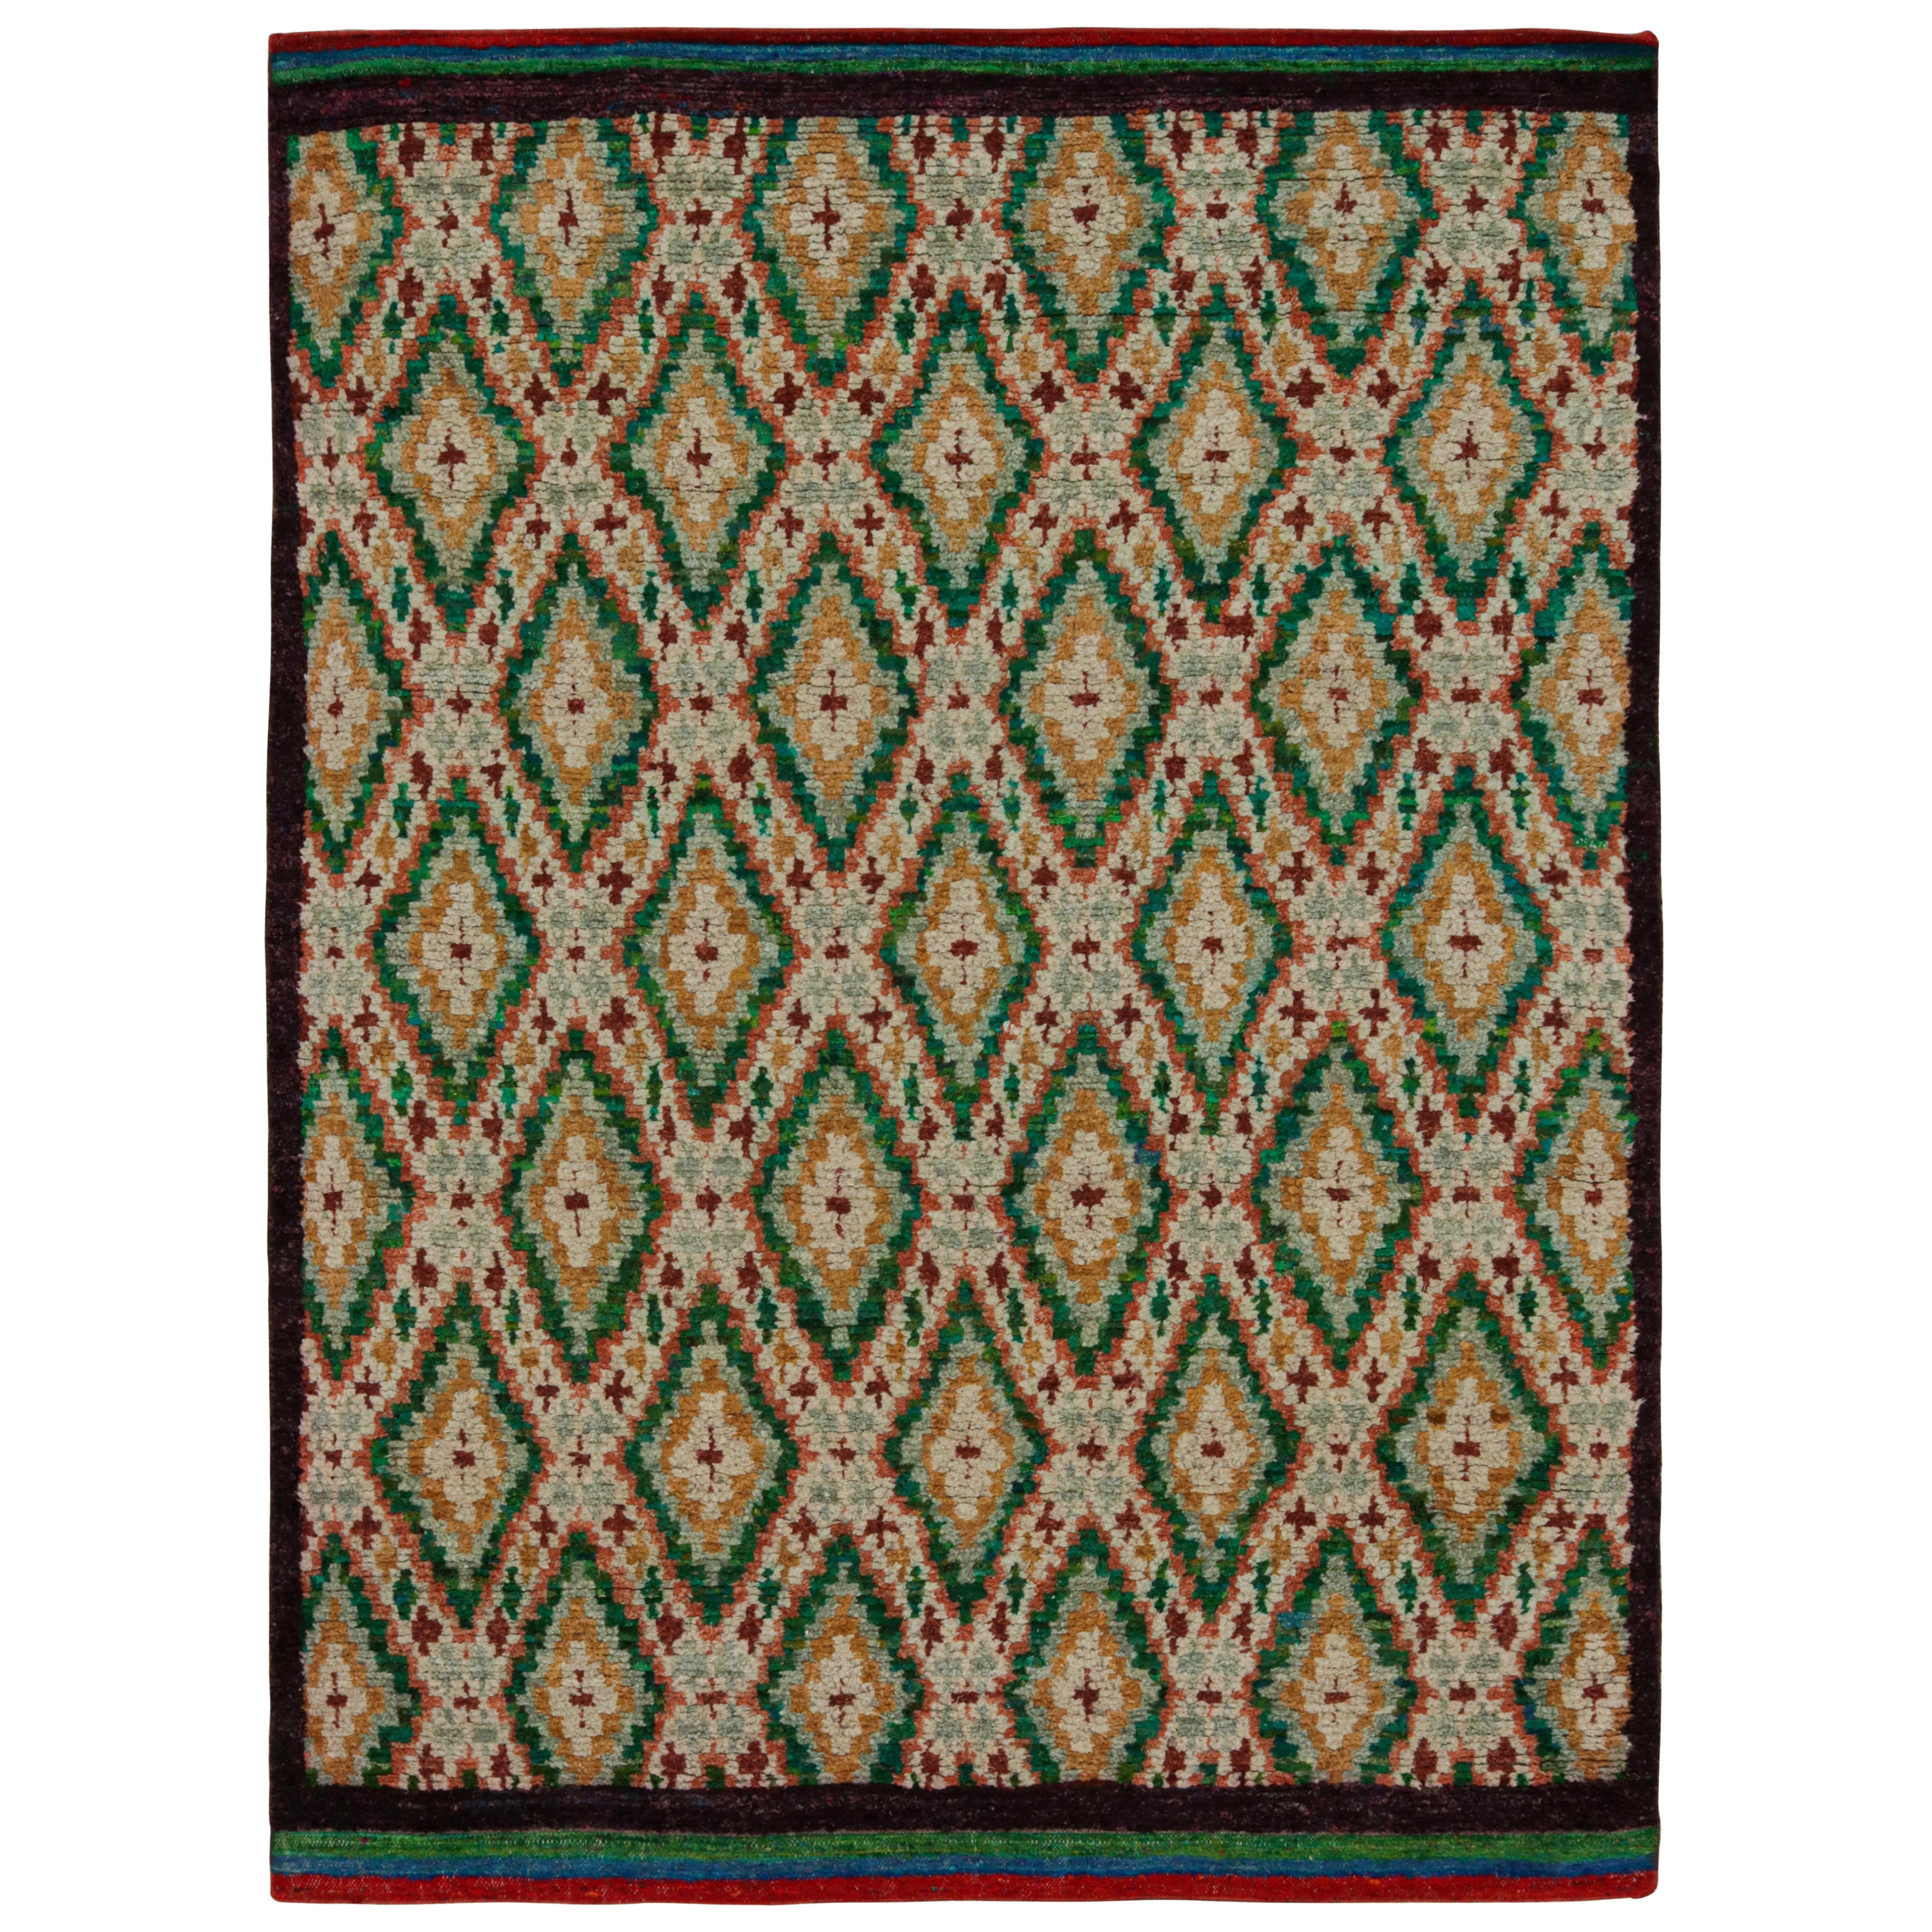 Rug & Kilim's Modernity Moroccan Style Rug in Green & Gold Geometric Patterns (tapis de style marocain moderne avec des motifs géométriques verts et dorés) en vente